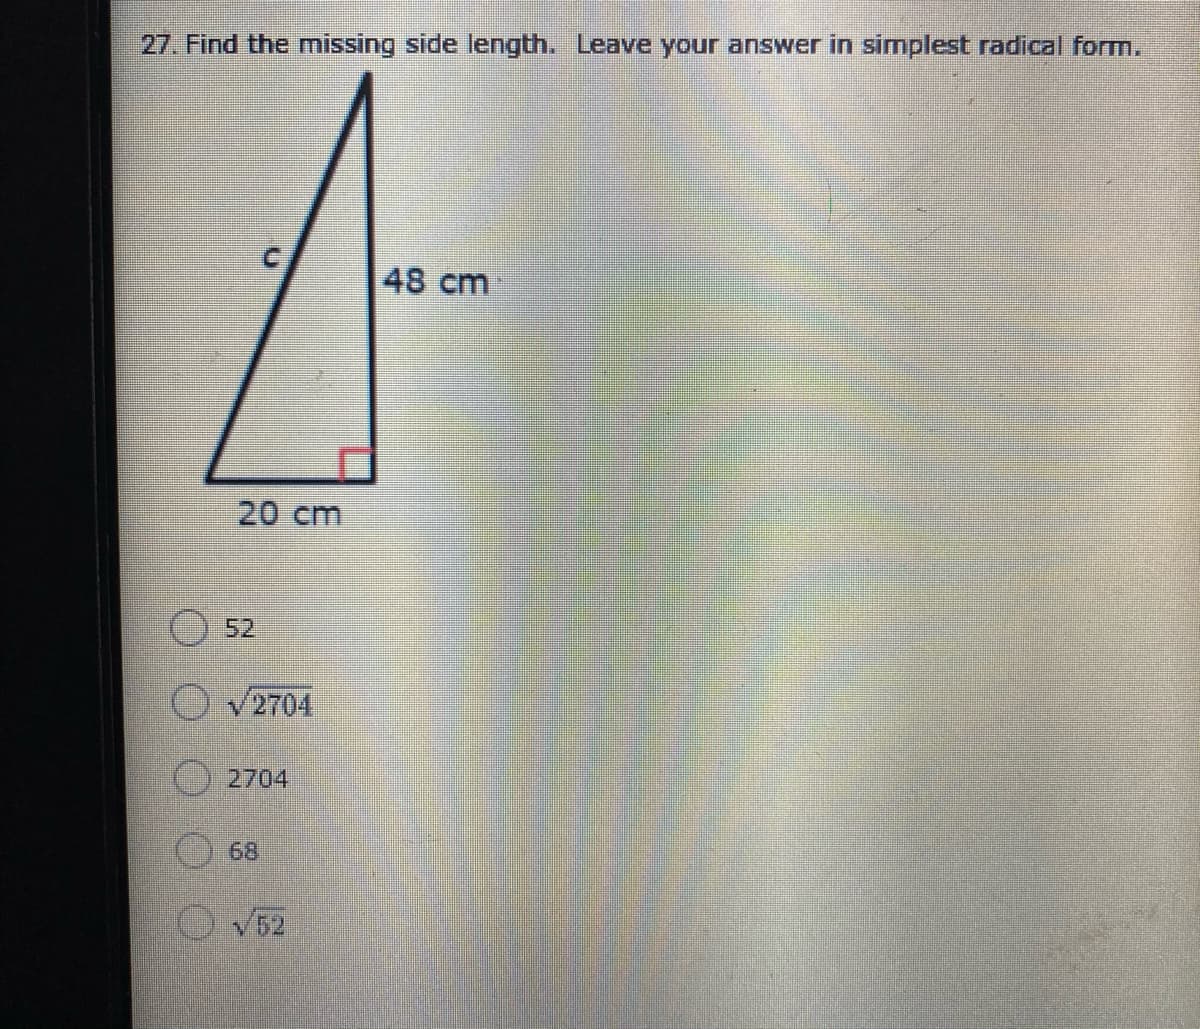 27. Find the missing side length. Leave your answer in simplest radical form.
48 cm
20 cm
52
v2704
2704
68
V52
